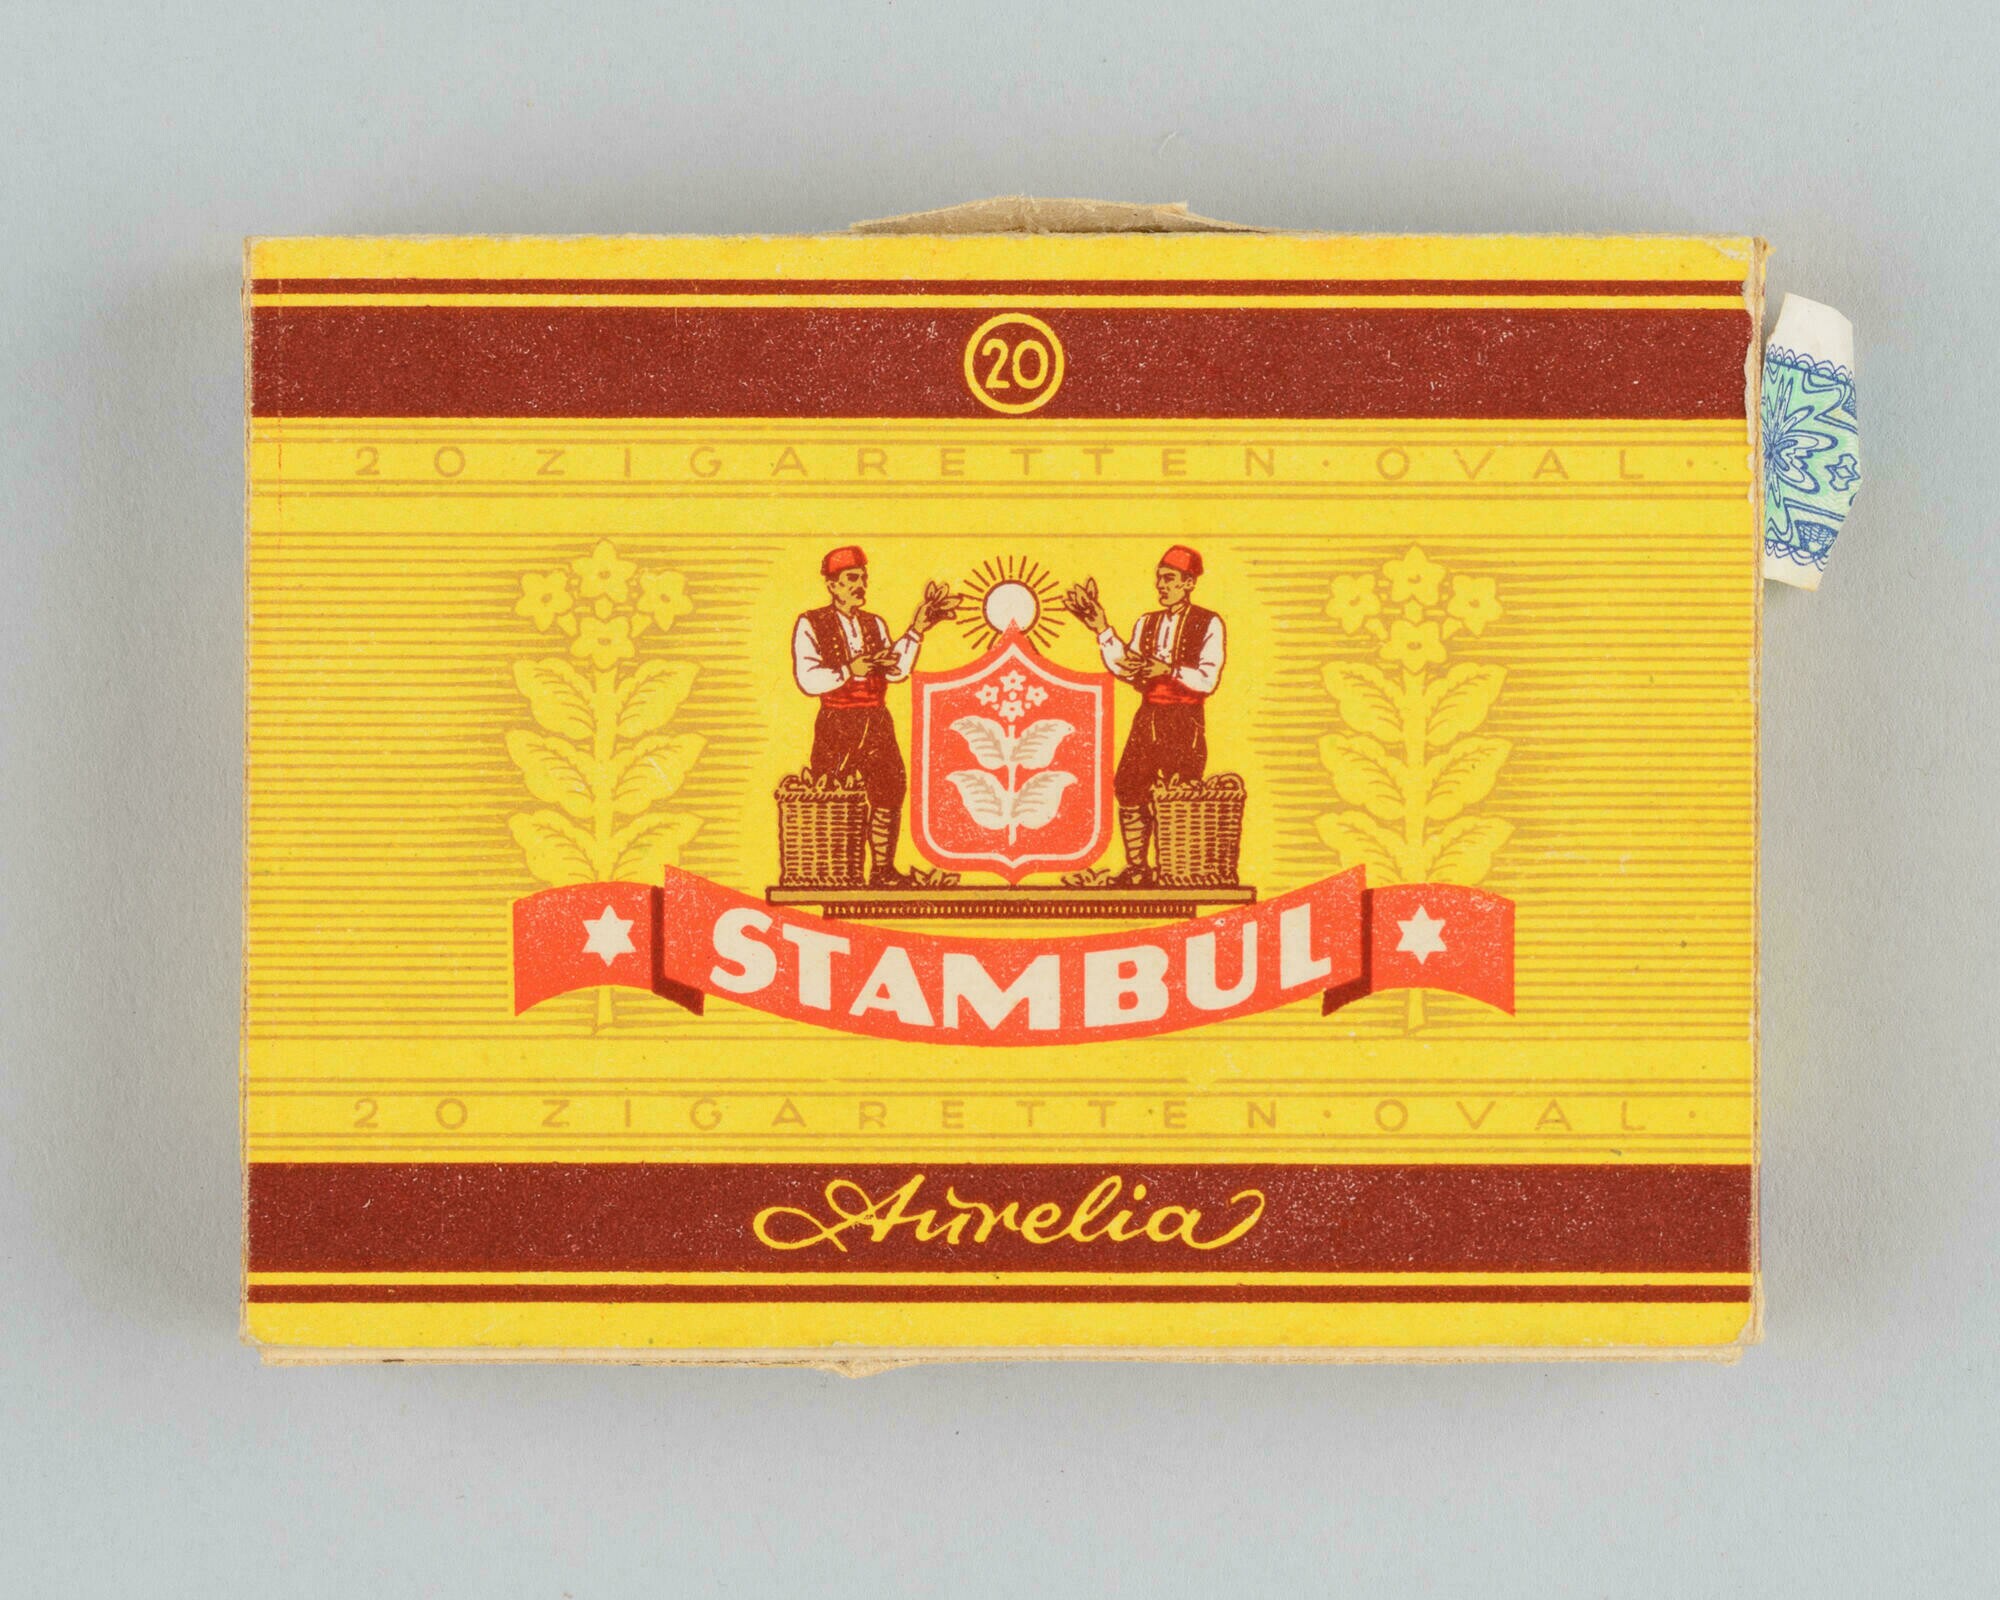 Zigarettenschachtel der Marke "Stambul" (Stadtmuseum Dresden CC BY-NC-ND)